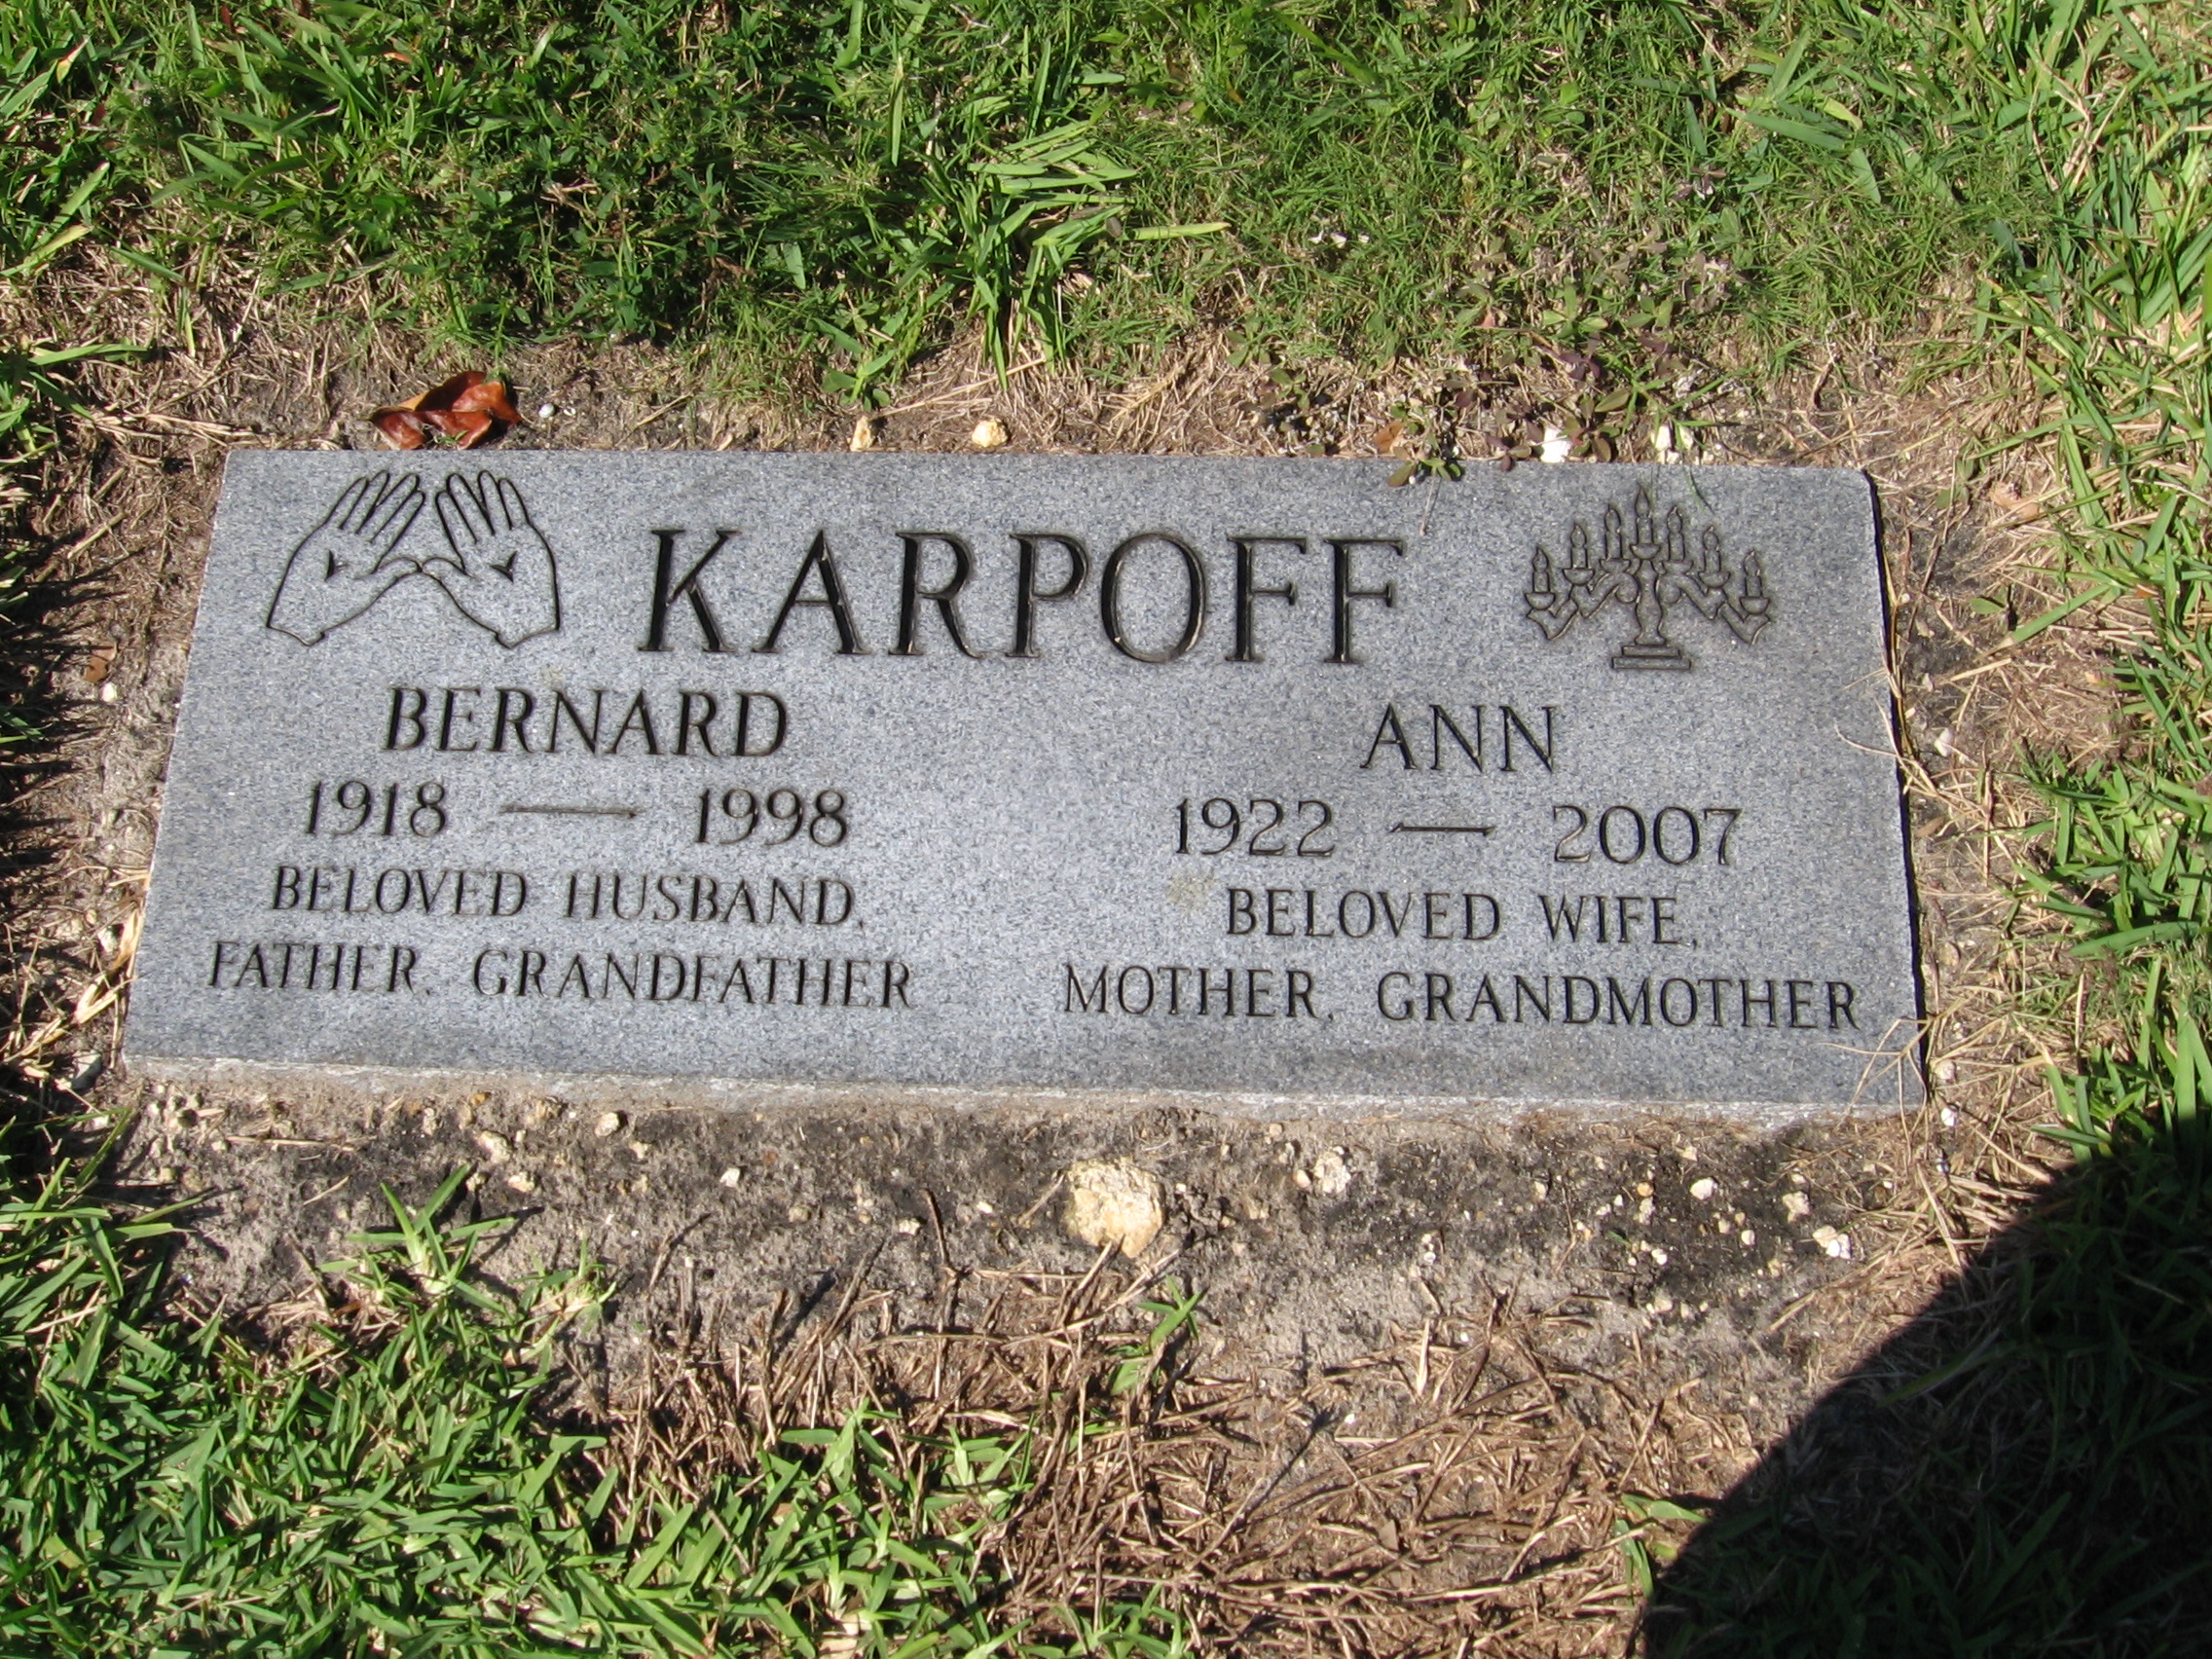 Ann Karpoff